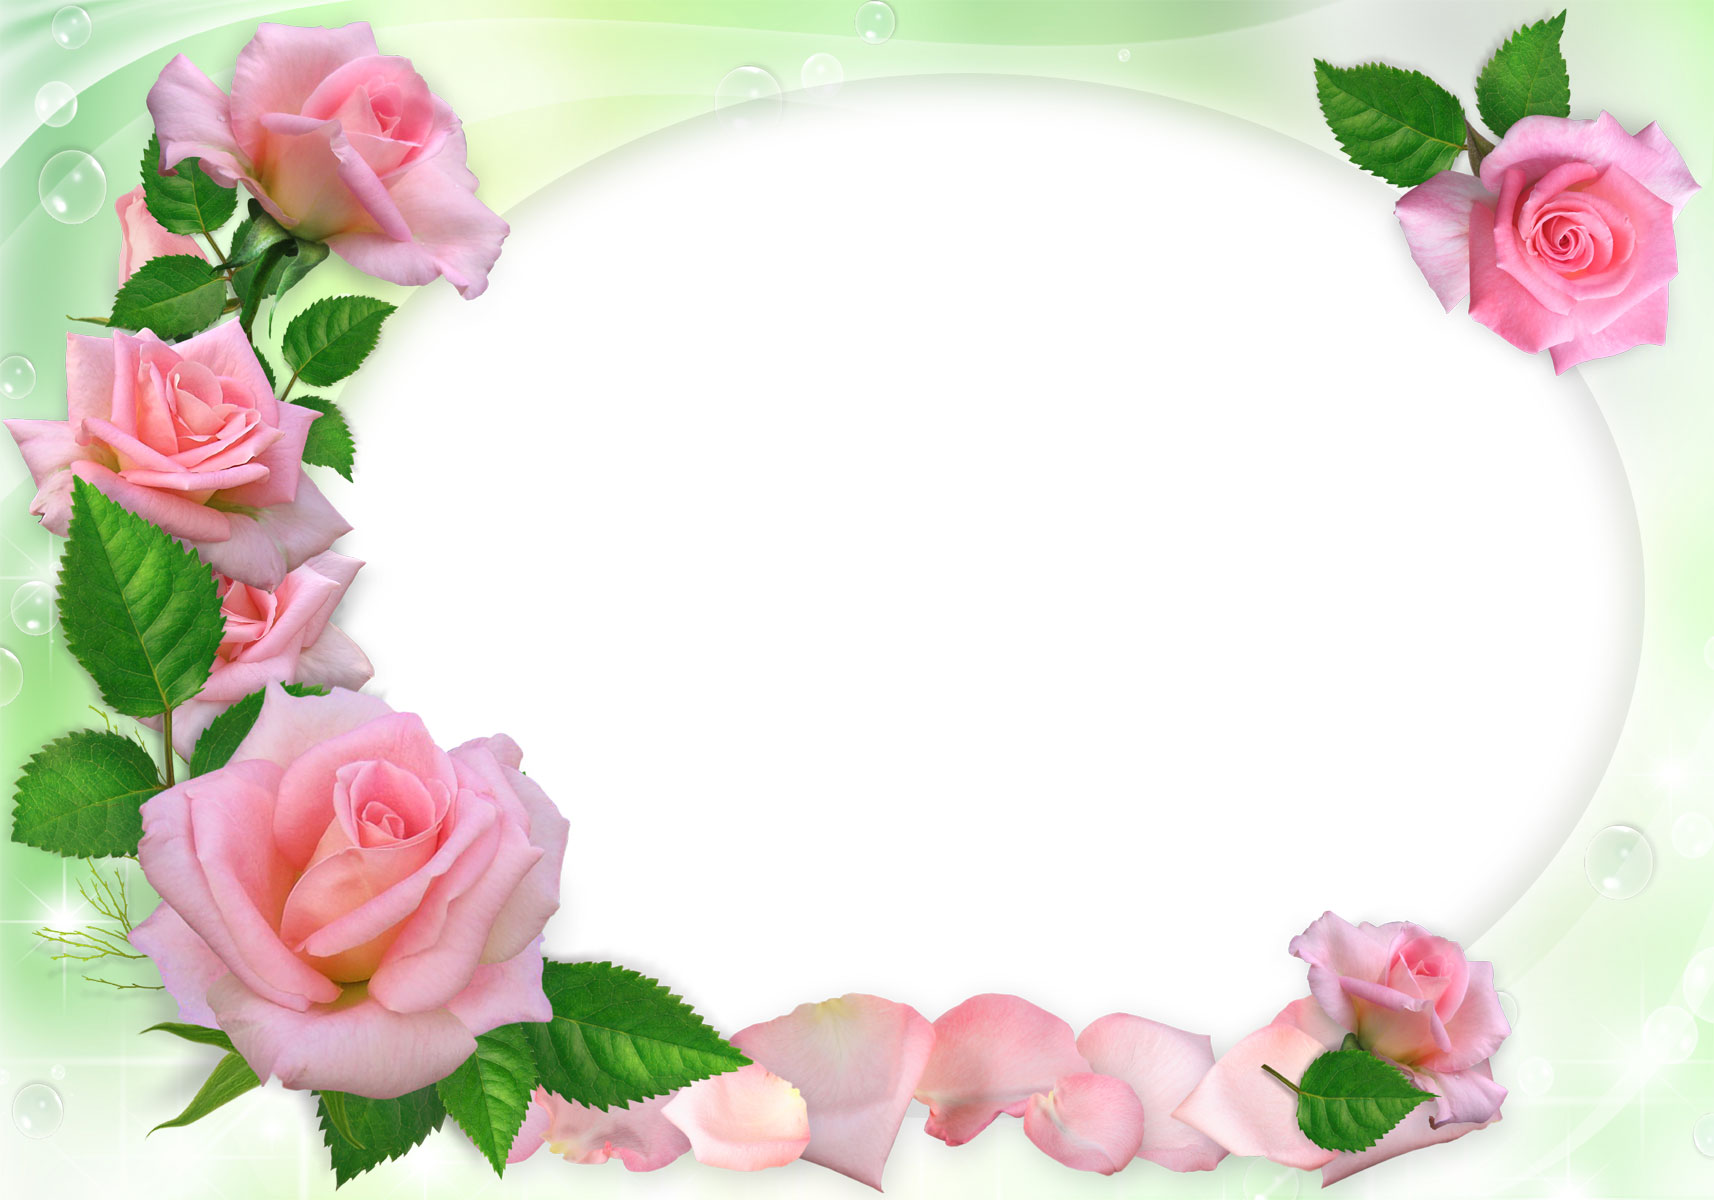 ピンクの花の写真 フリー素材 No 527 ピンクのバラ 花びら